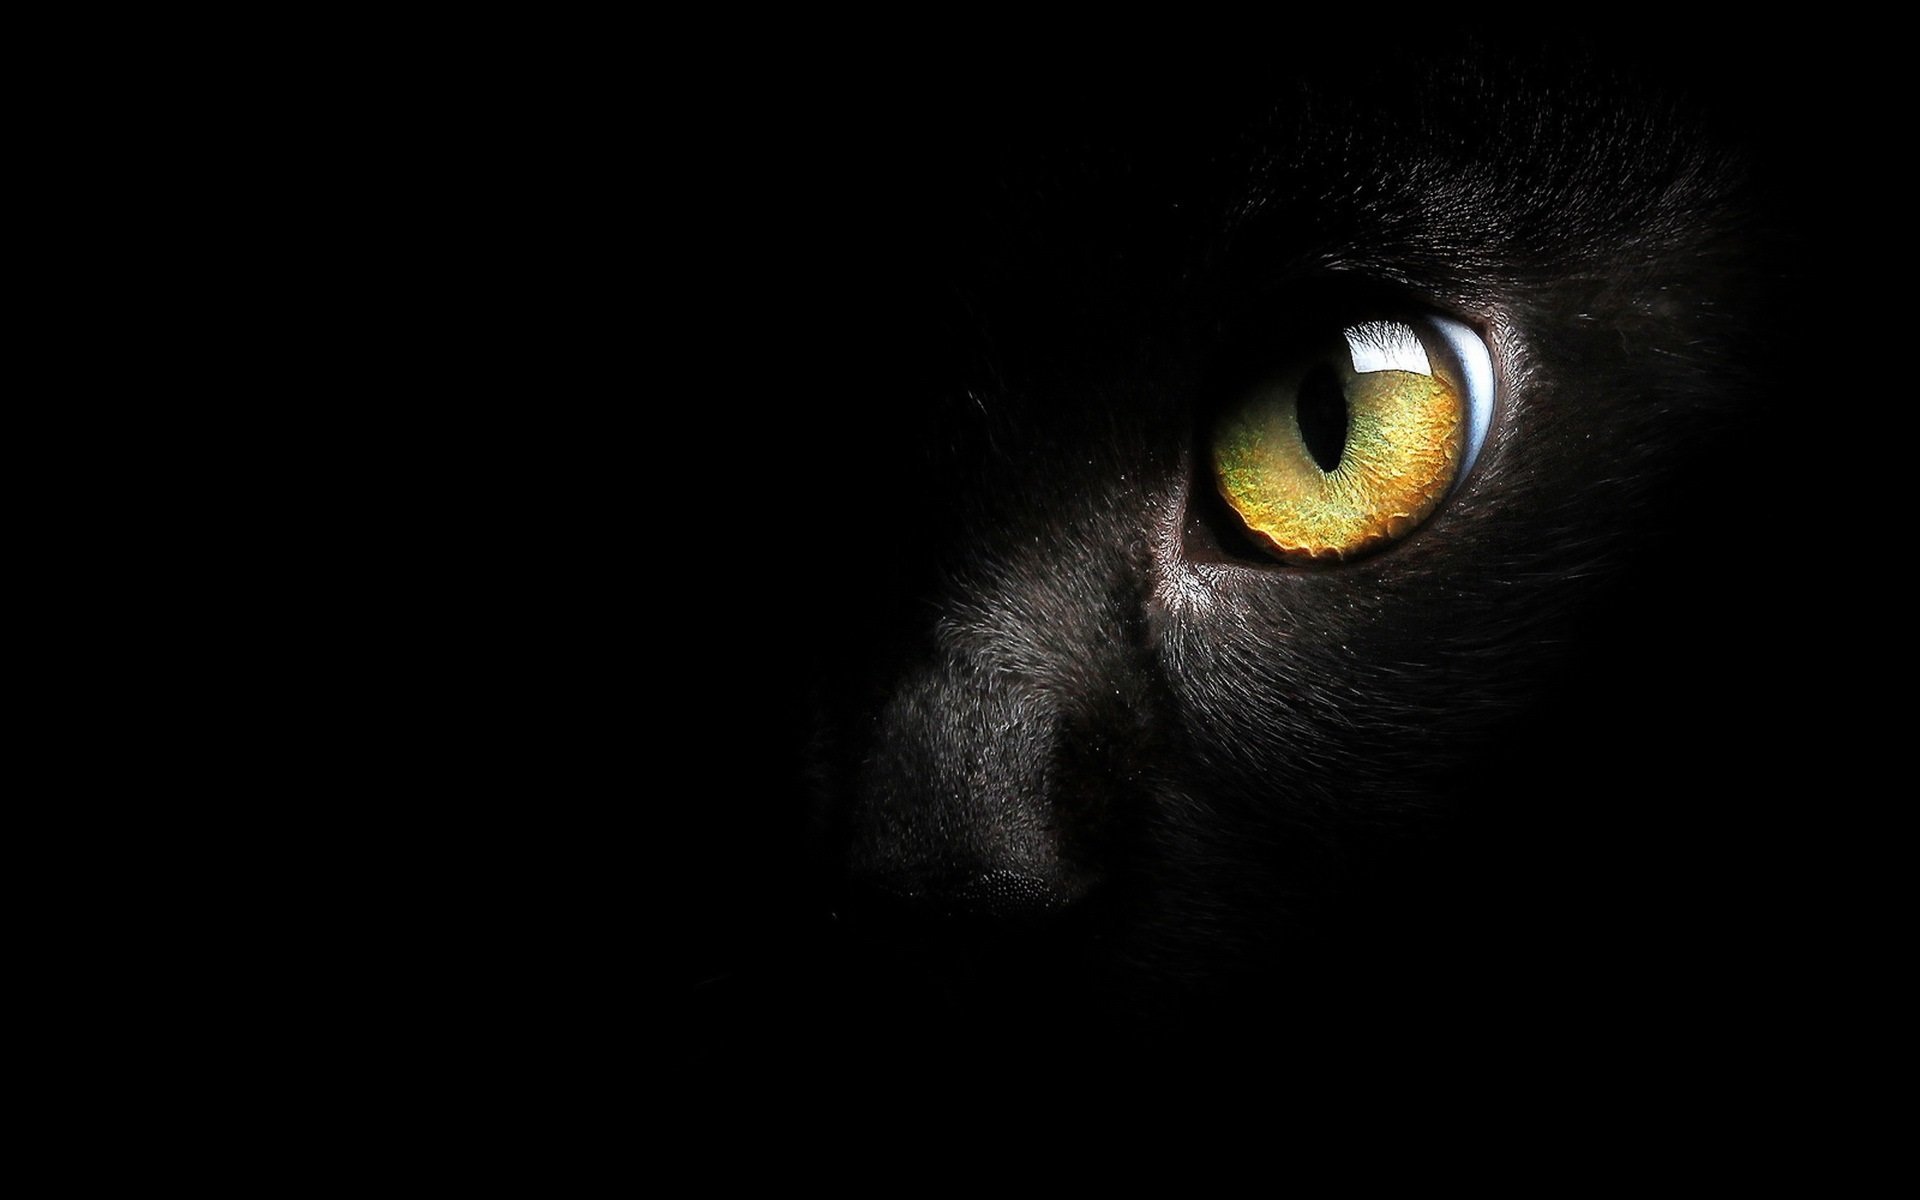 фанфик глаза пантеры светятся в ночи фото 24